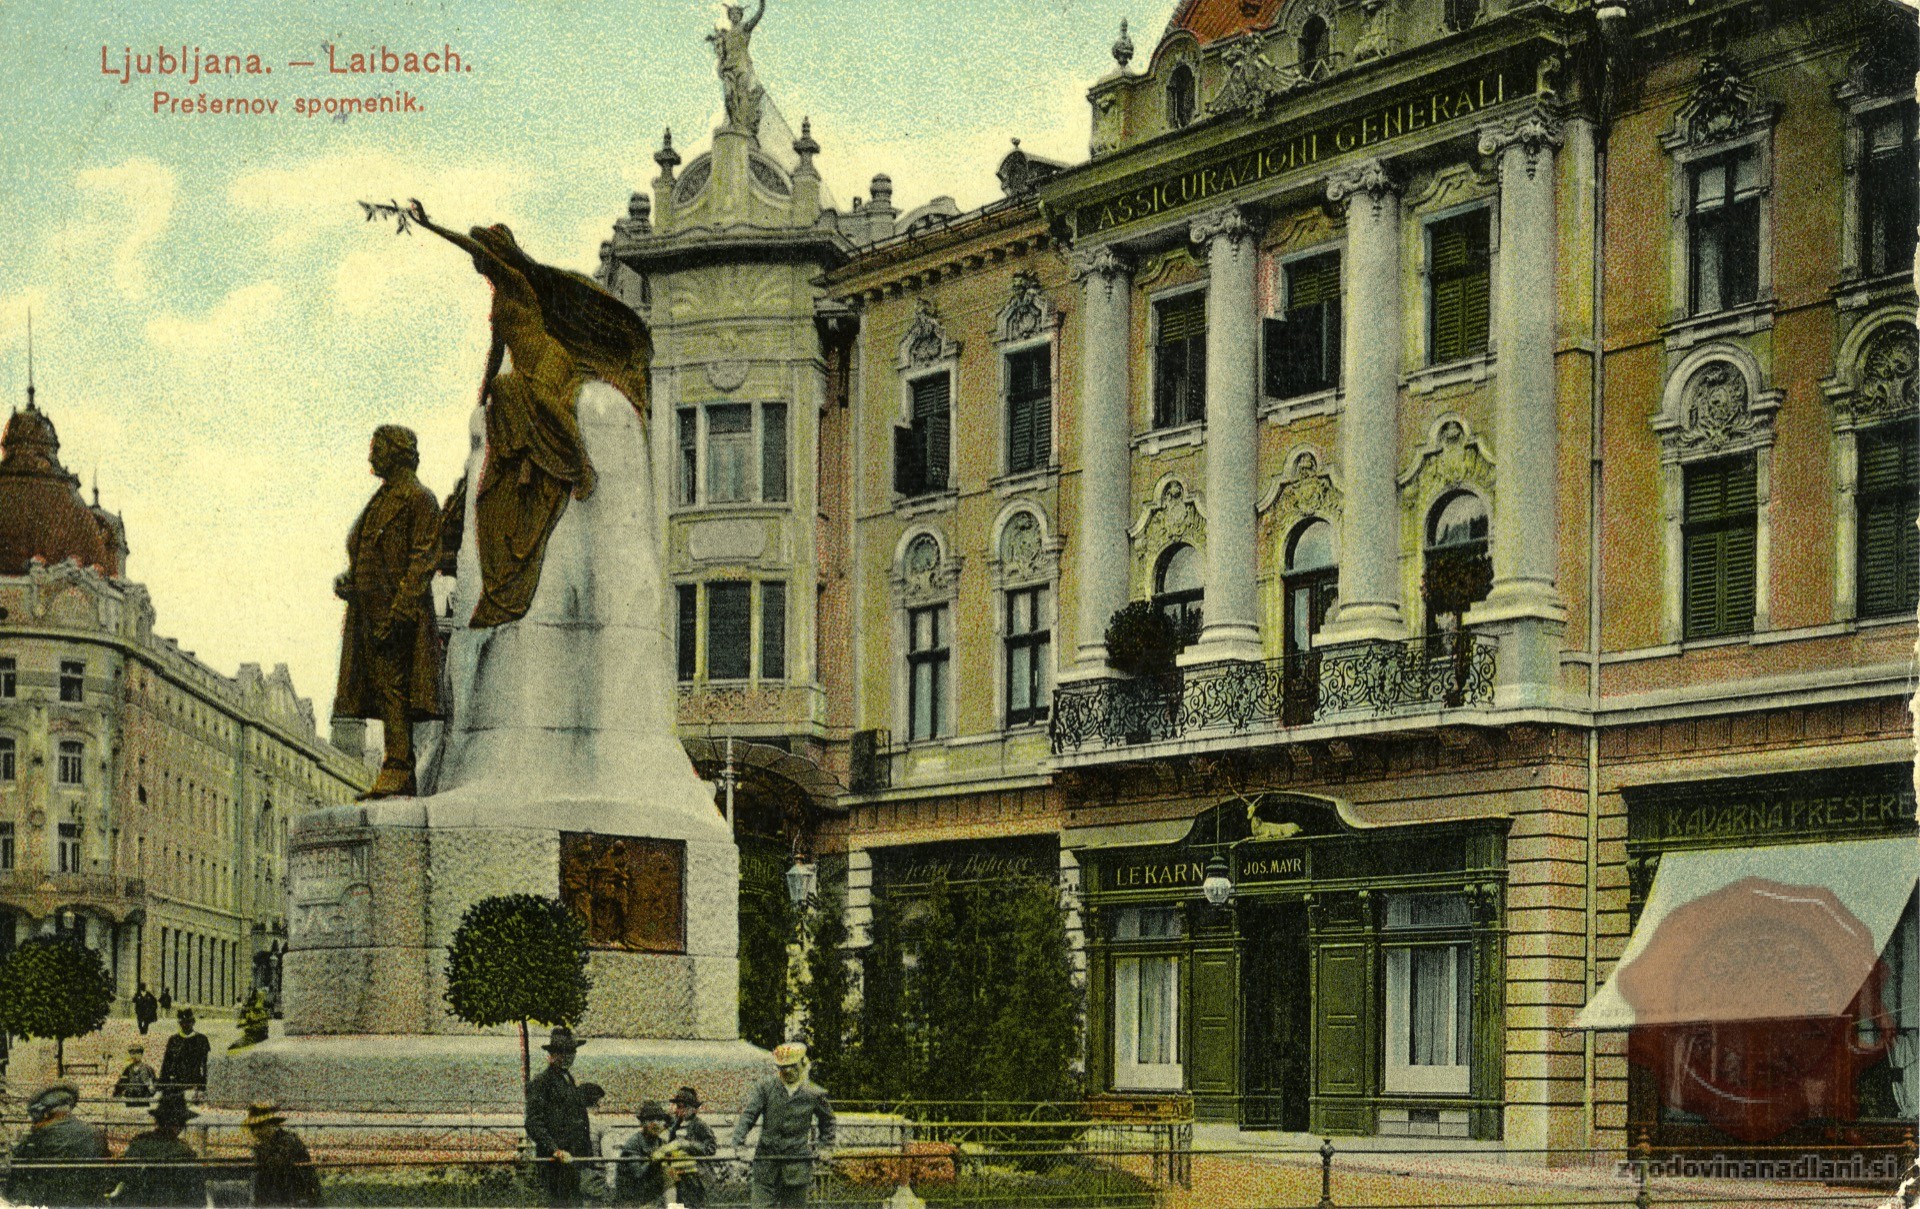 prešernov_spomenik_lekarna_prešernov_trg_marijin_trg_urbančeva_hiša_ljubljana_1913